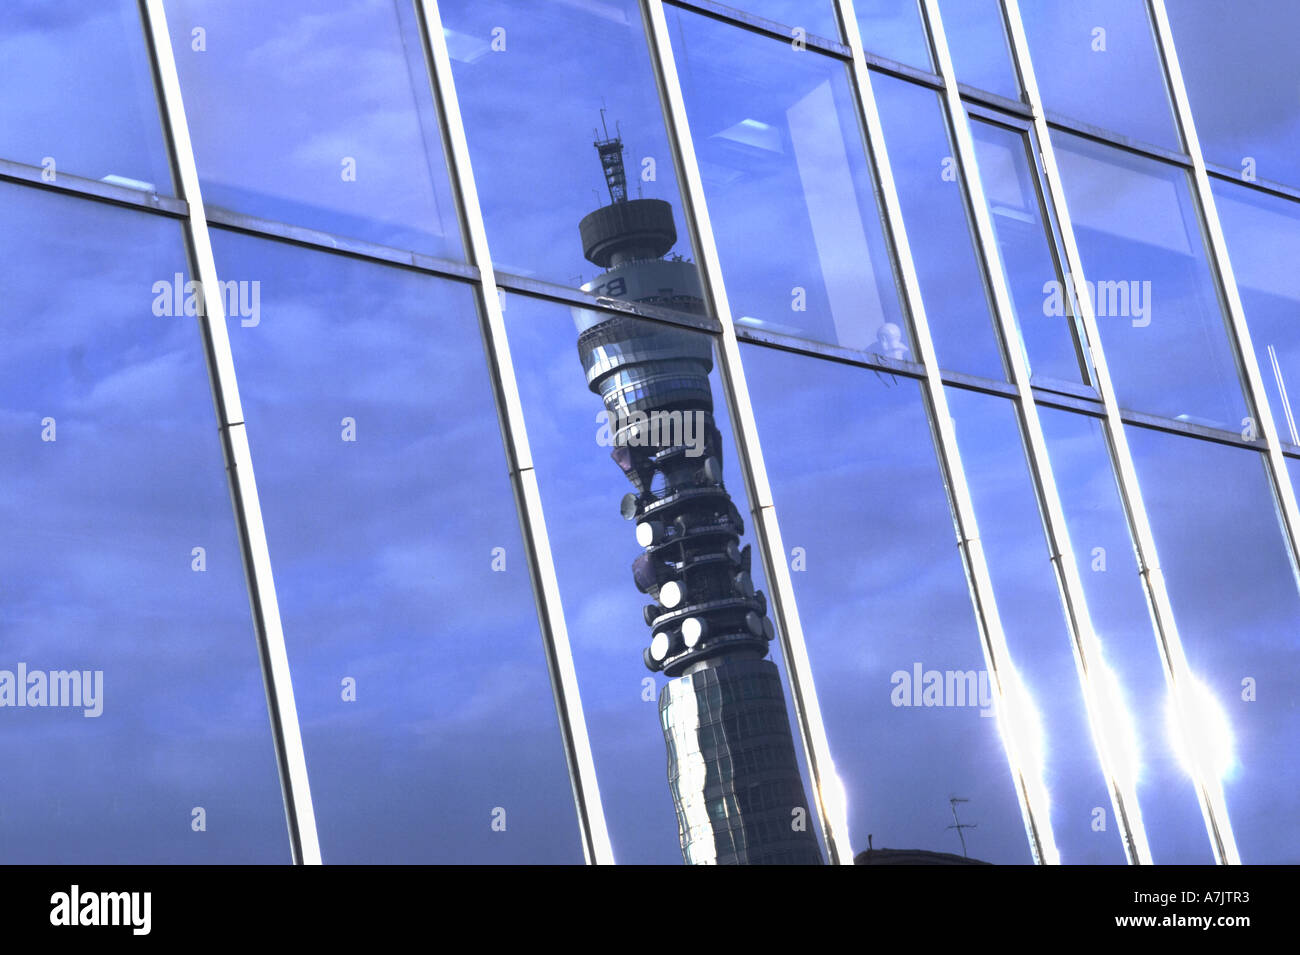 Finestra di riflessione BT British Telecom Tower in London REGNO UNITO Foto Stock